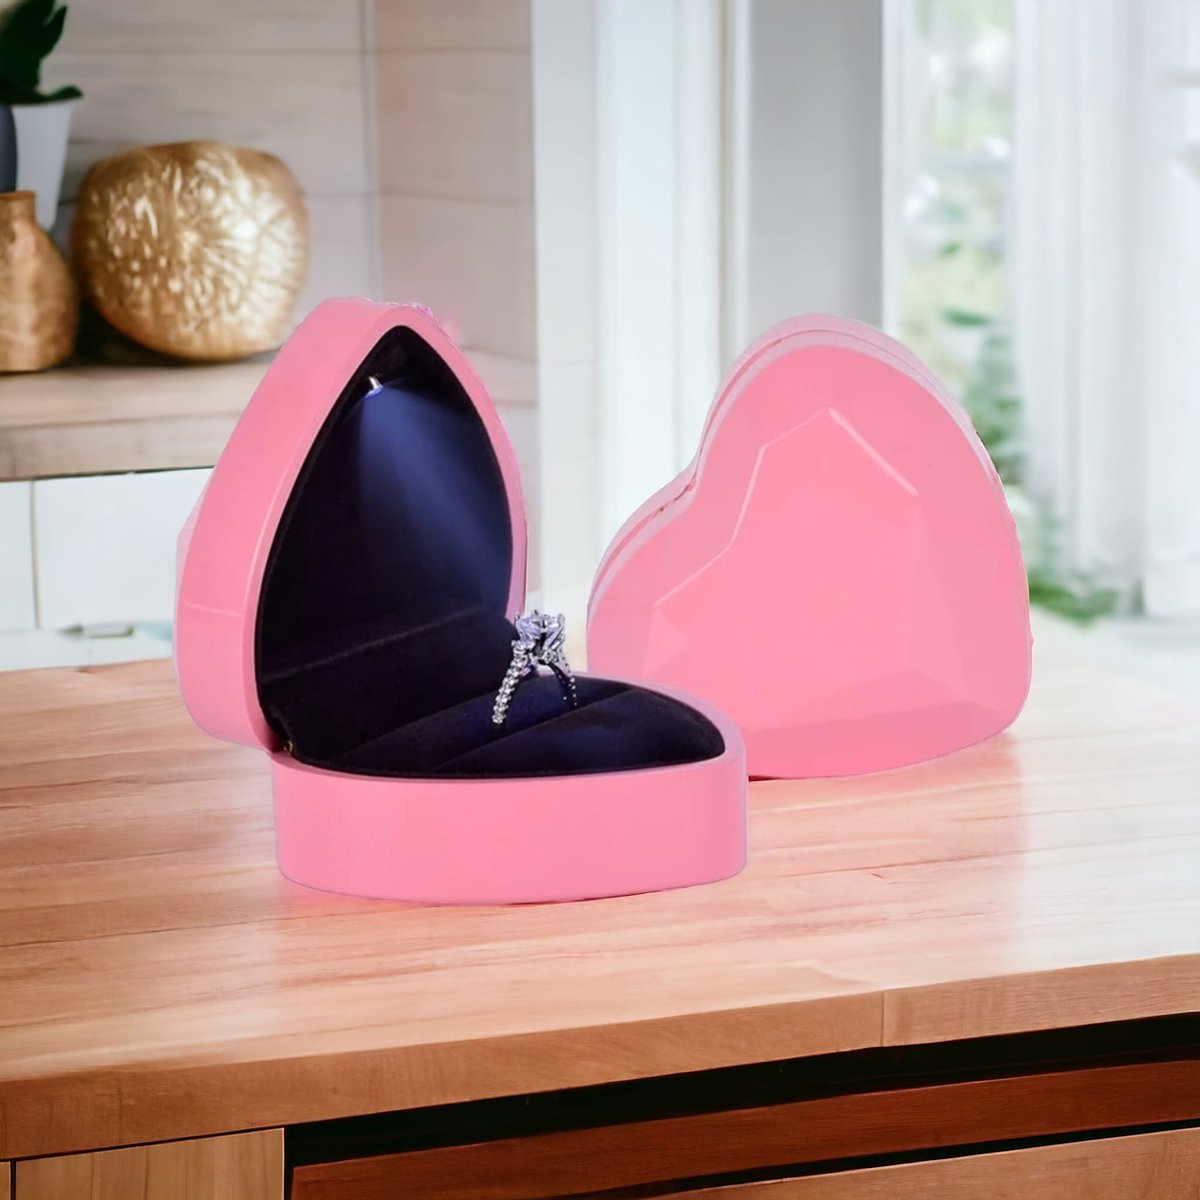 AliRose - Juweel Doos - Display - Sieraad - LED - Ring Box - Roze - Huwelijk - Aanzoek - Valentijn - Liefde - Romantisch - Partner - Amor